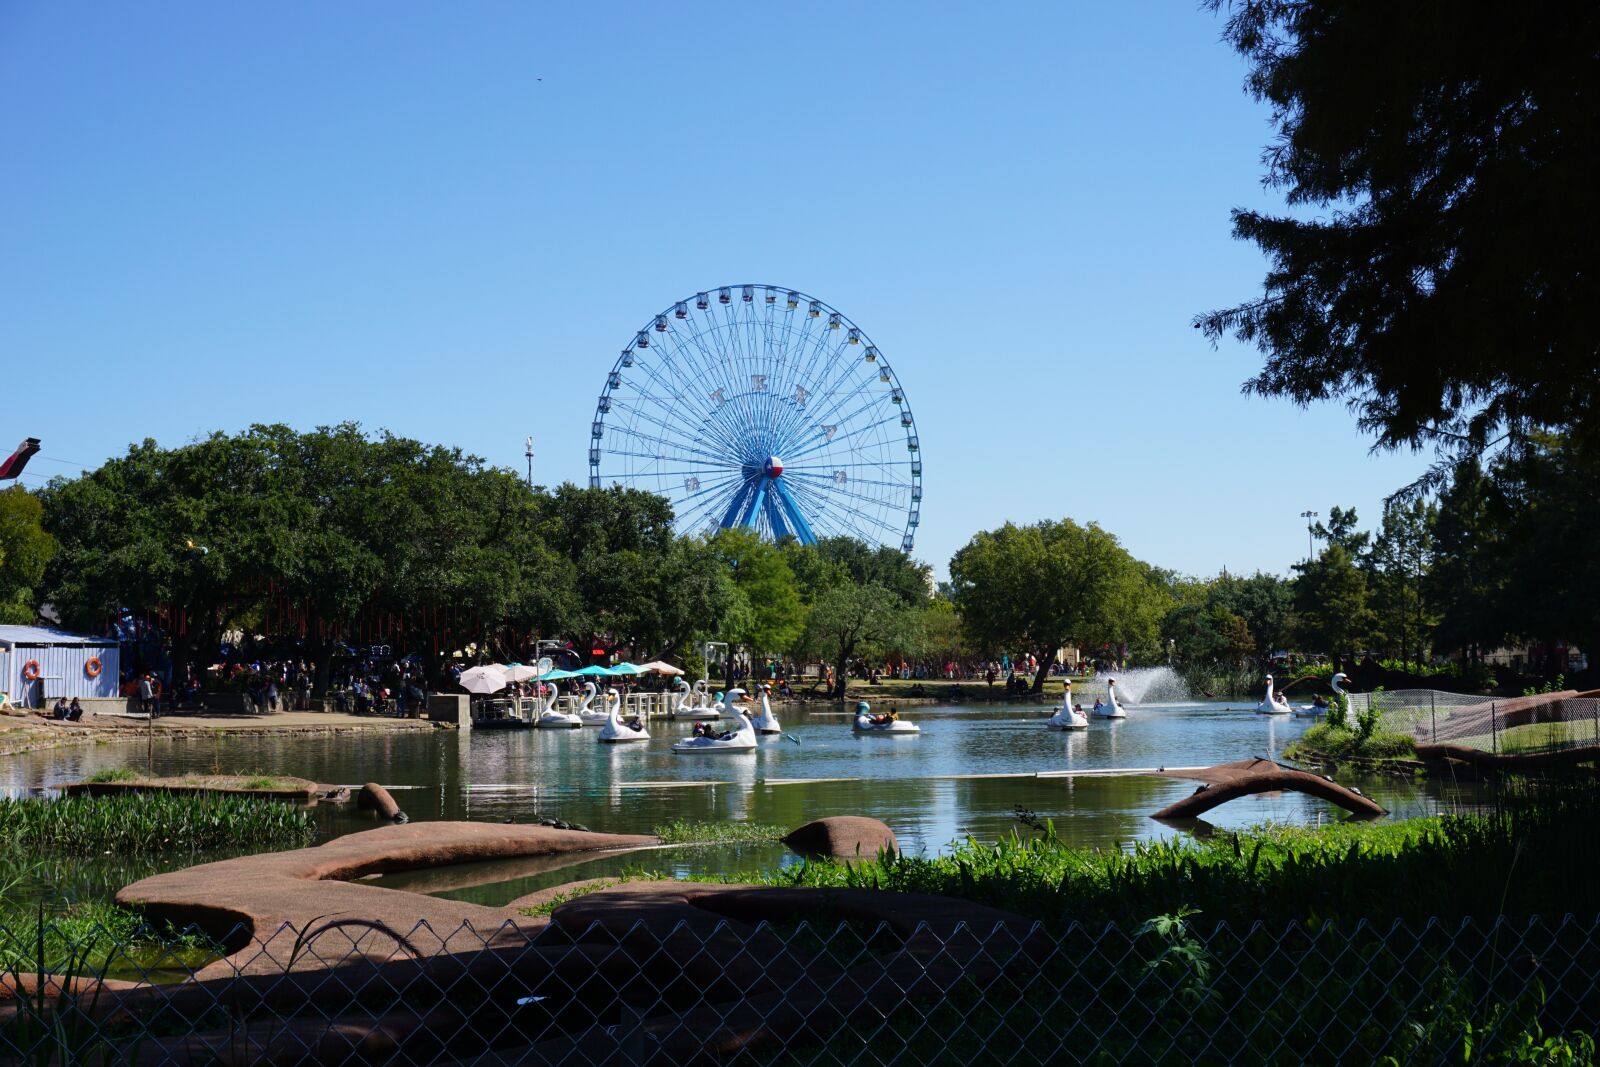 Sony a6000 sample photo. Ferris wheel, fair park photography